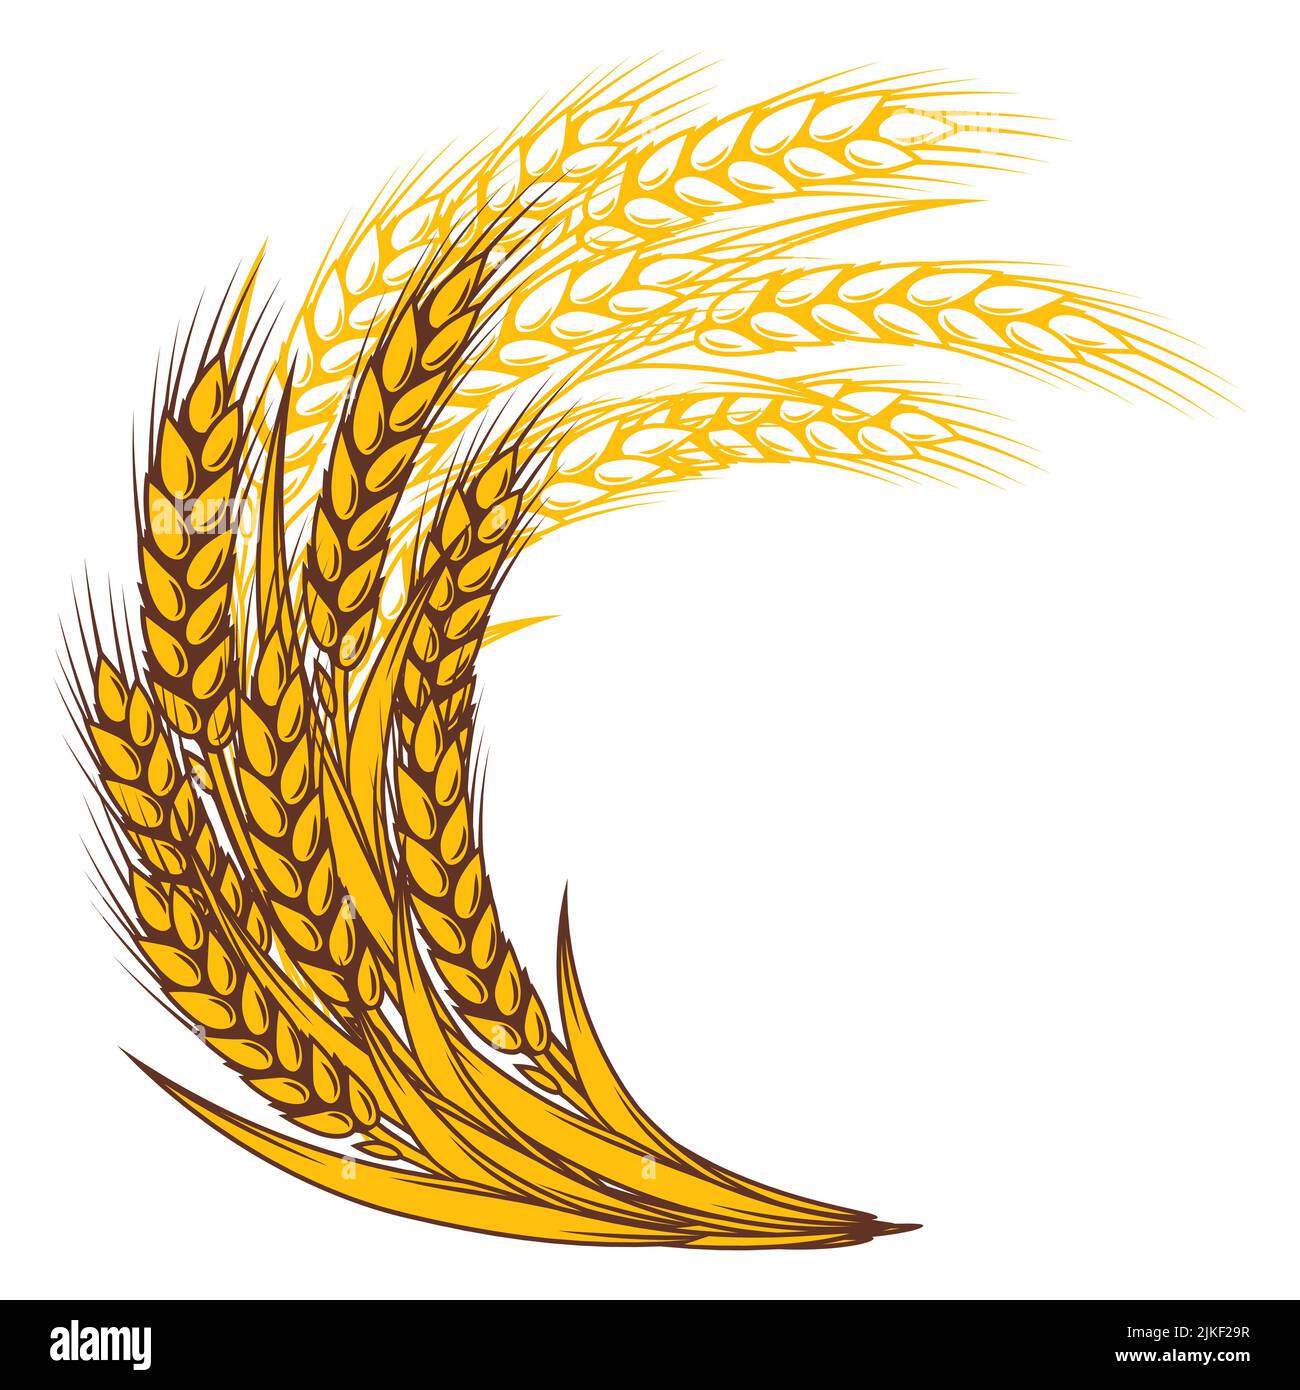 Weizenbündel. Landwirtschaftliches Bild mit natürlichen goldenen Ohren von Gerste oder Roggen. Stock Vektor